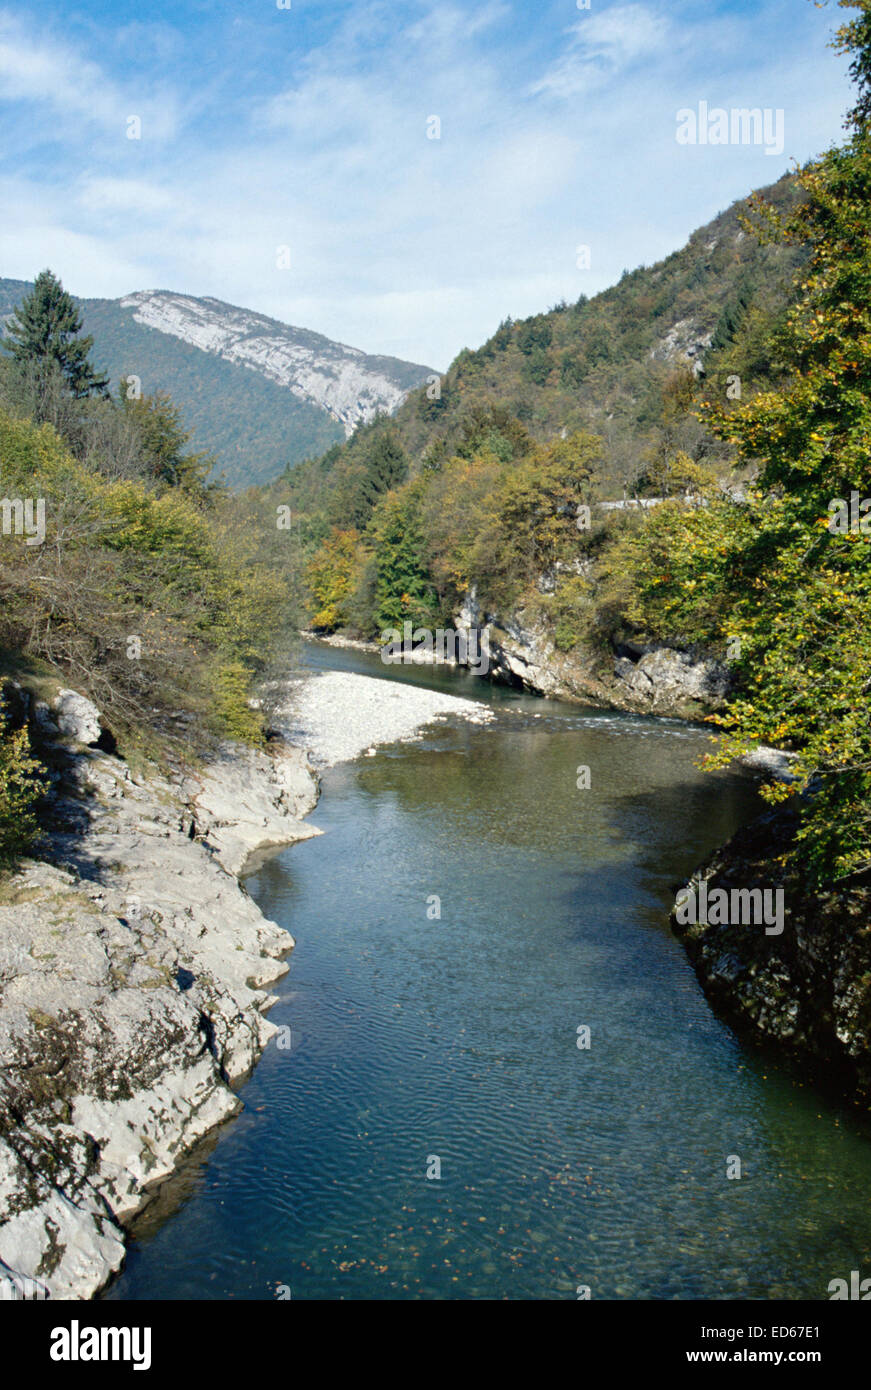 Vue verticale de la rivière du Fier et les montagnes dans la vallée de Thônes, près d'Annecy en Savoie, France Banque D'Images